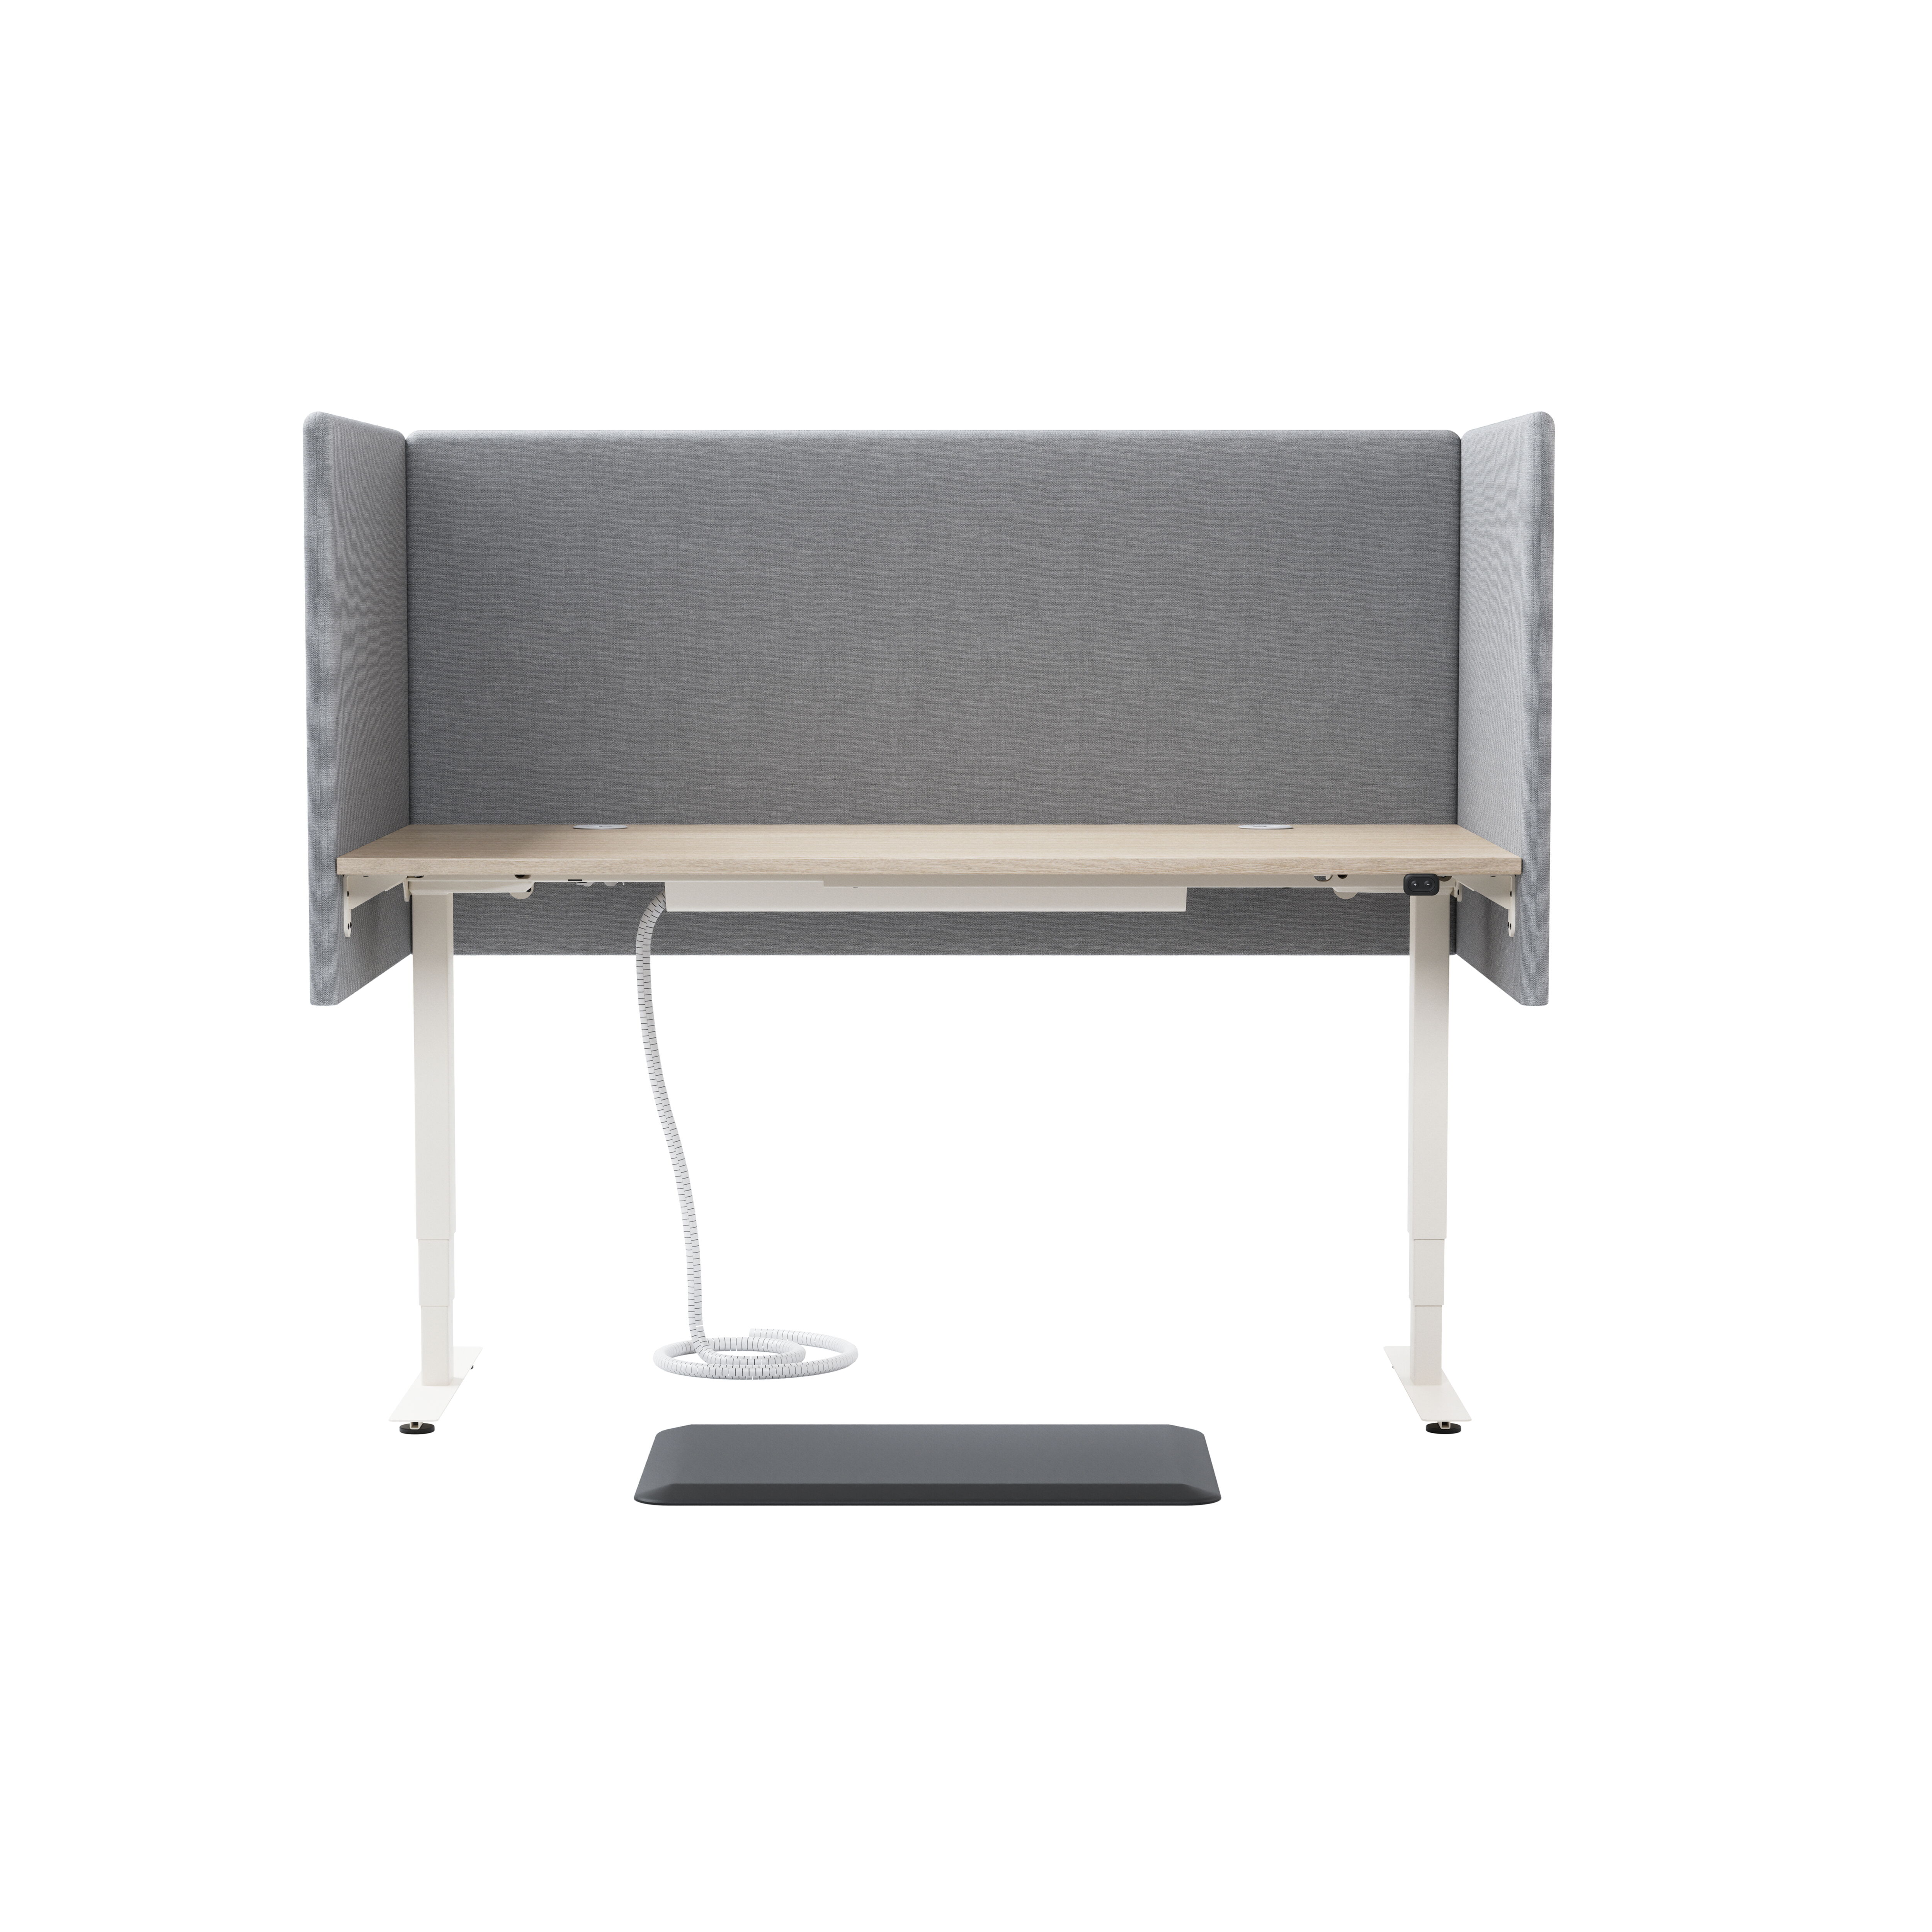 Izi Pro S Desk, sit/stand product image 4